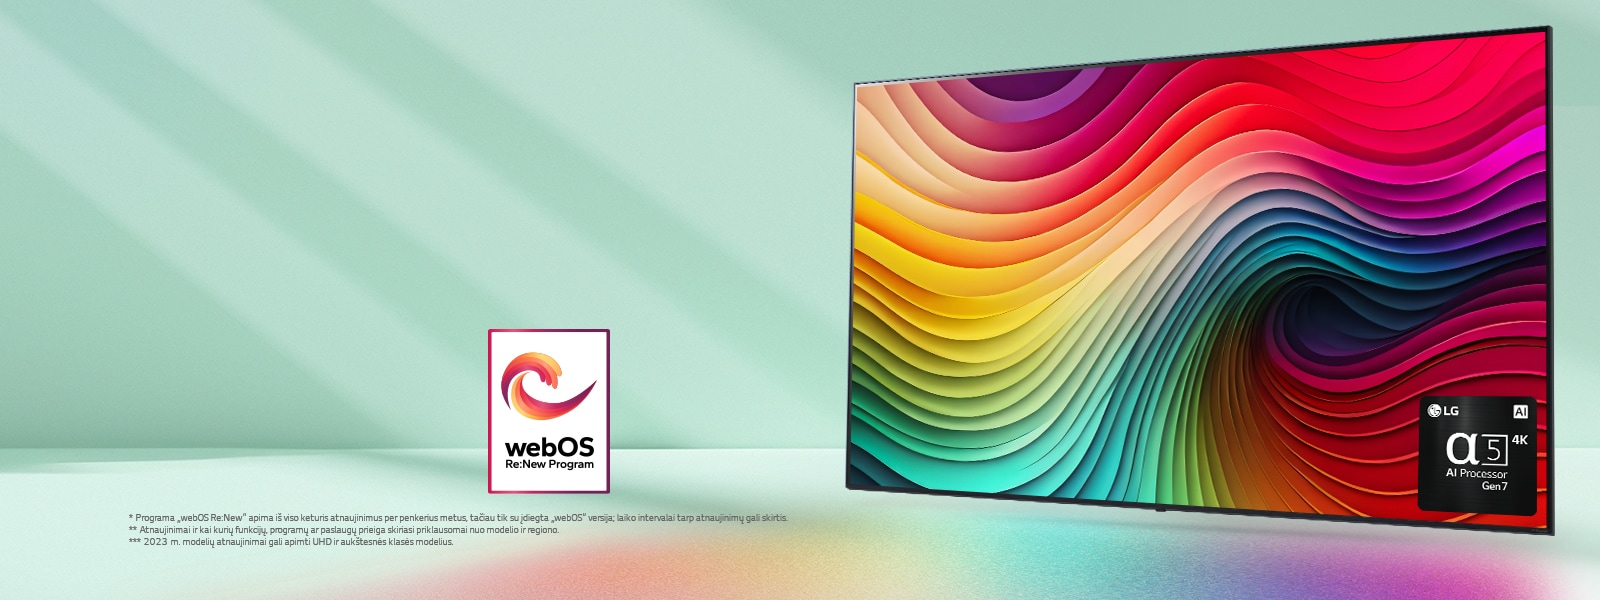 LG „NanoCell“ TV mėtų žalios spalvos fone su įvairiaspalviais sūkuriais, o apatiniame dešiniajame kampe pavaizduotas „alpha 5 AI Processor Gen 7“. Šviesa sklinda ir meta spalvingus šešėlius apačioje. Rodomas „webOS Re:New“ programos logotipas. Atsakomybės atsisakymo tekstas: Programa „webOS Re:New“ apima iš viso keturis atnaujinimus per penkerius metus, tačiau tik su įdiegta „webOS“ versija; laiko intervalai tarp atnaujinimų gali skirtis. Atnaujinimai ir kai kurių funkcijų, programų ar paslaugų prieiga skiriasi priklausomai nuo modelio ir regiono.  2023 m. modelių atnaujinimai gali apimti UHD ir aukštesnės klasės modelius.